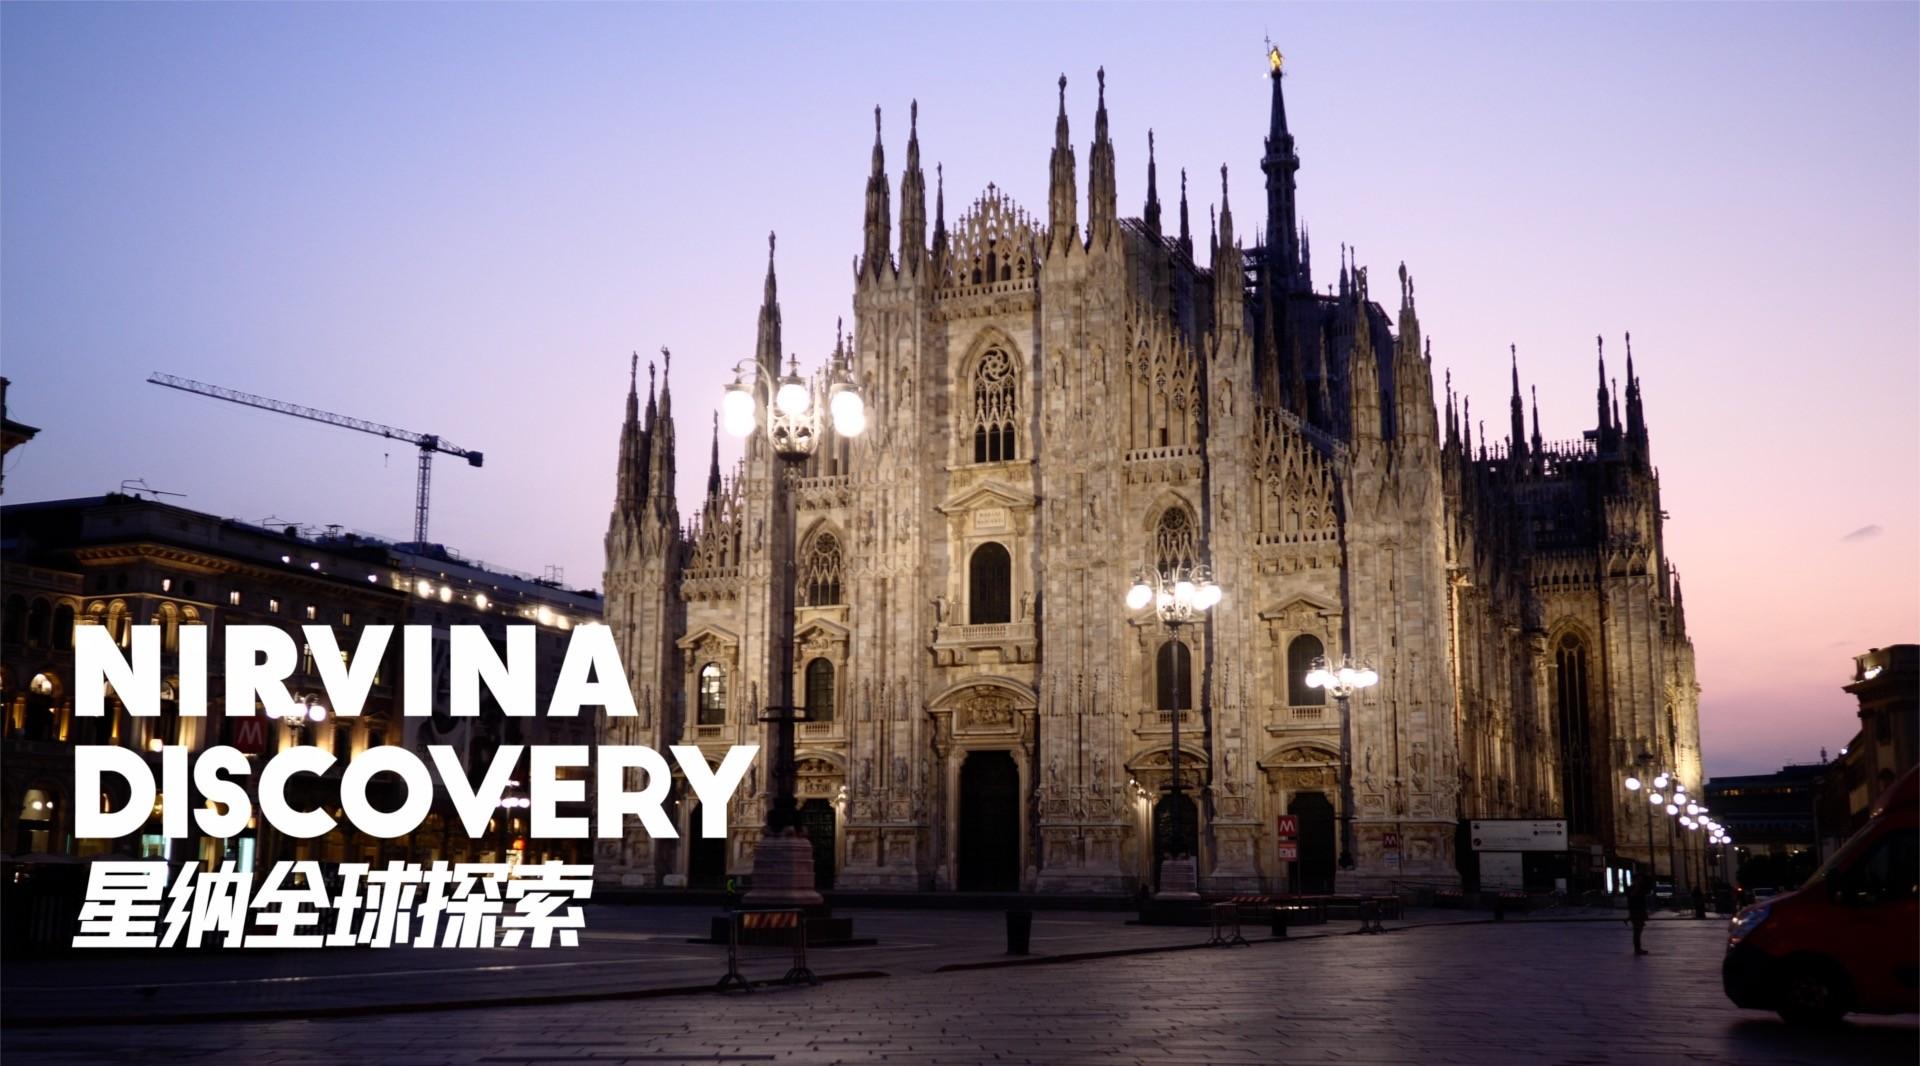 星纳全球时尚探索之旅第二站意大利预告片